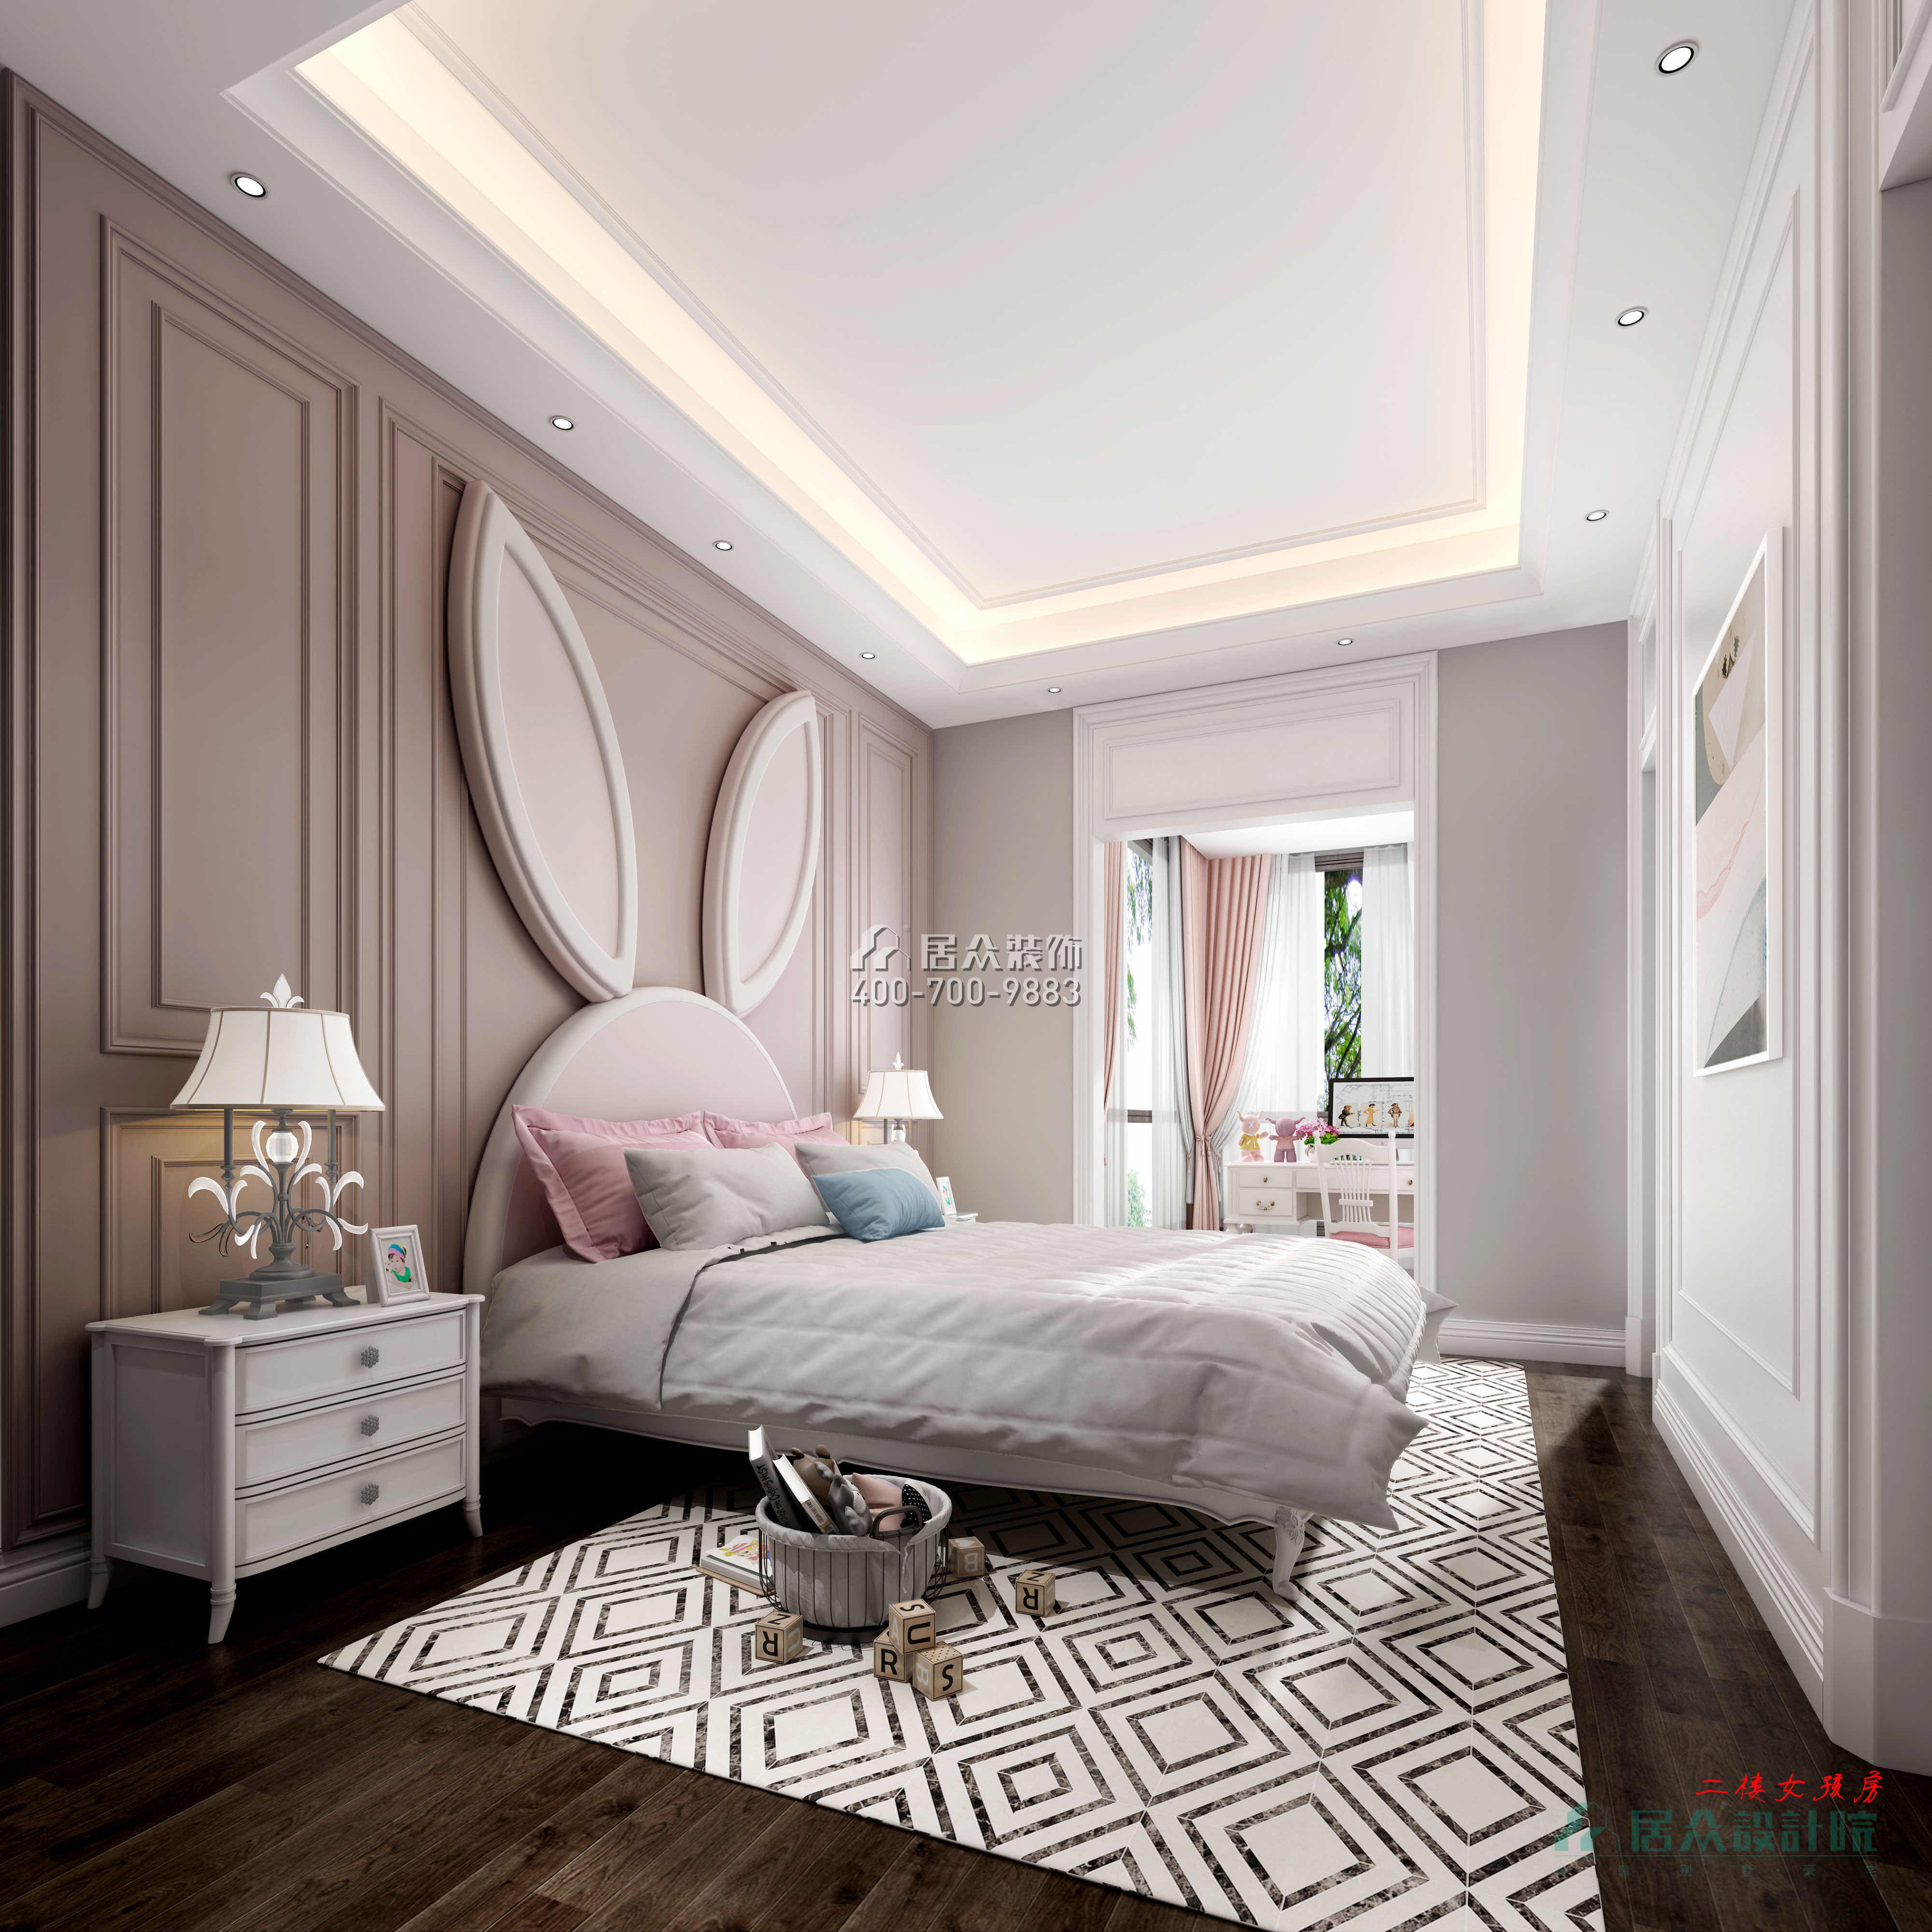 紫檀山700平方米現代簡約風格別墅戶型臥室裝修效果圖